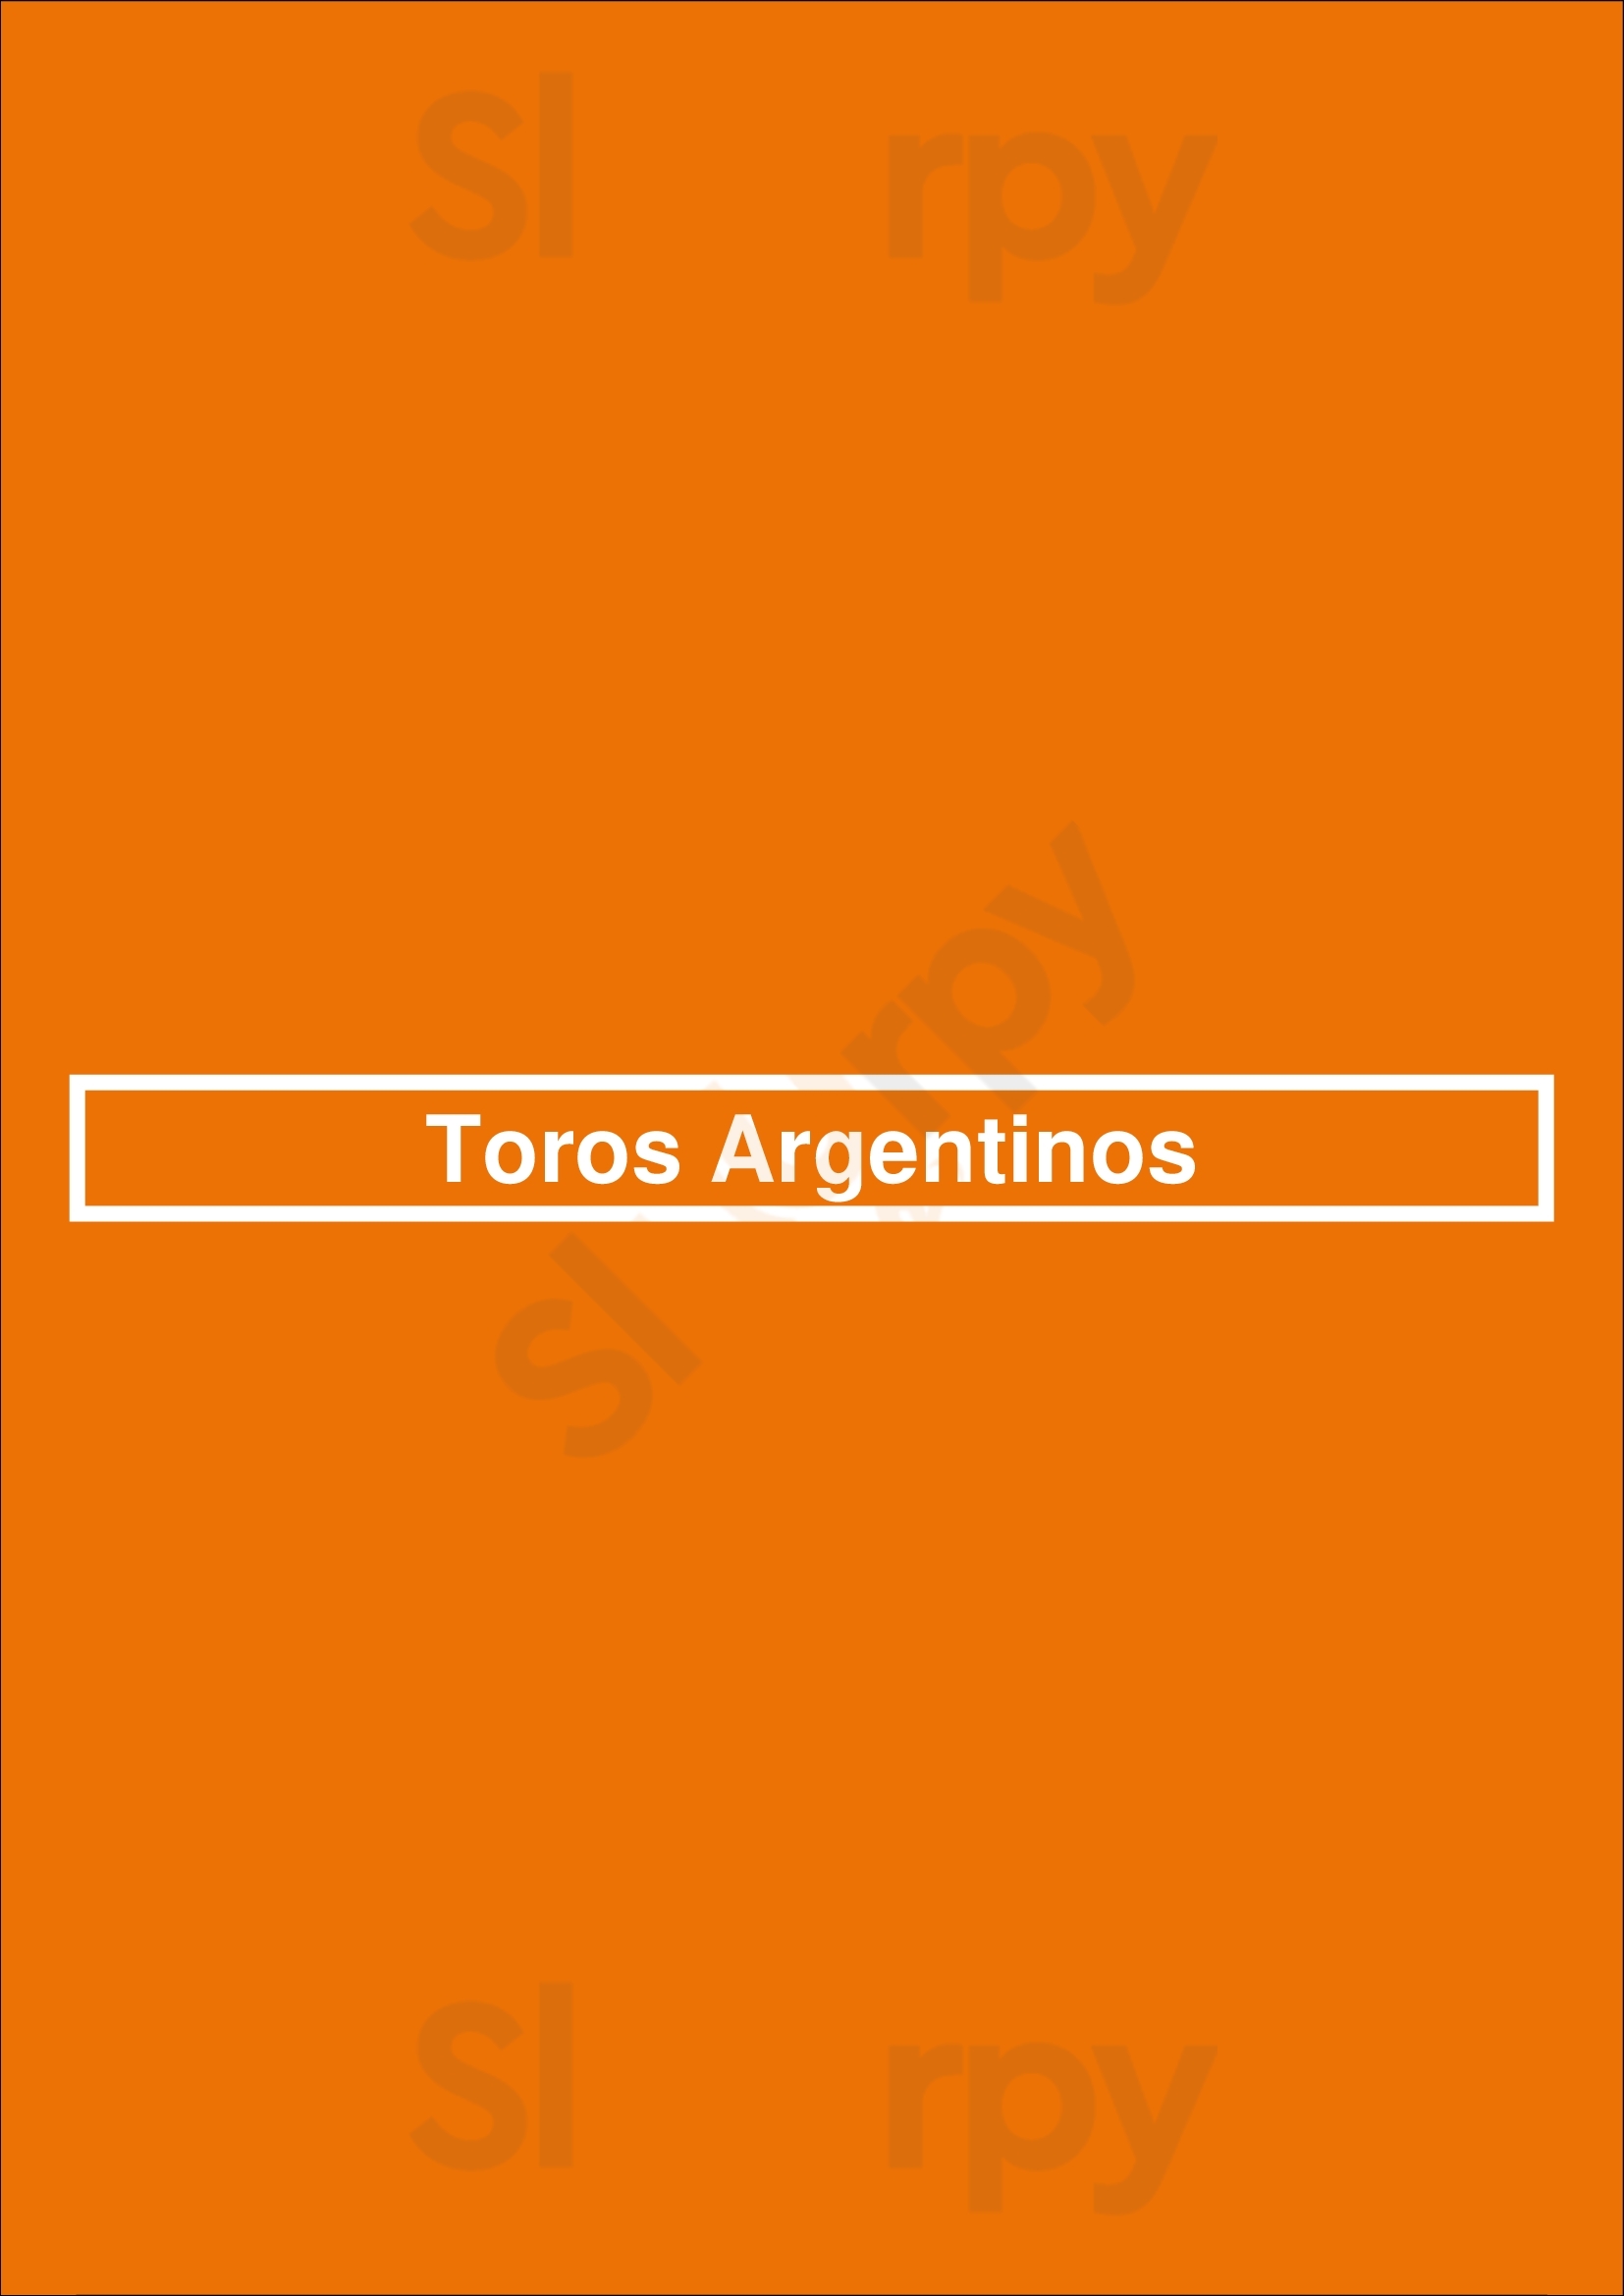 Toros Argentinos Rijswijk Menu - 1